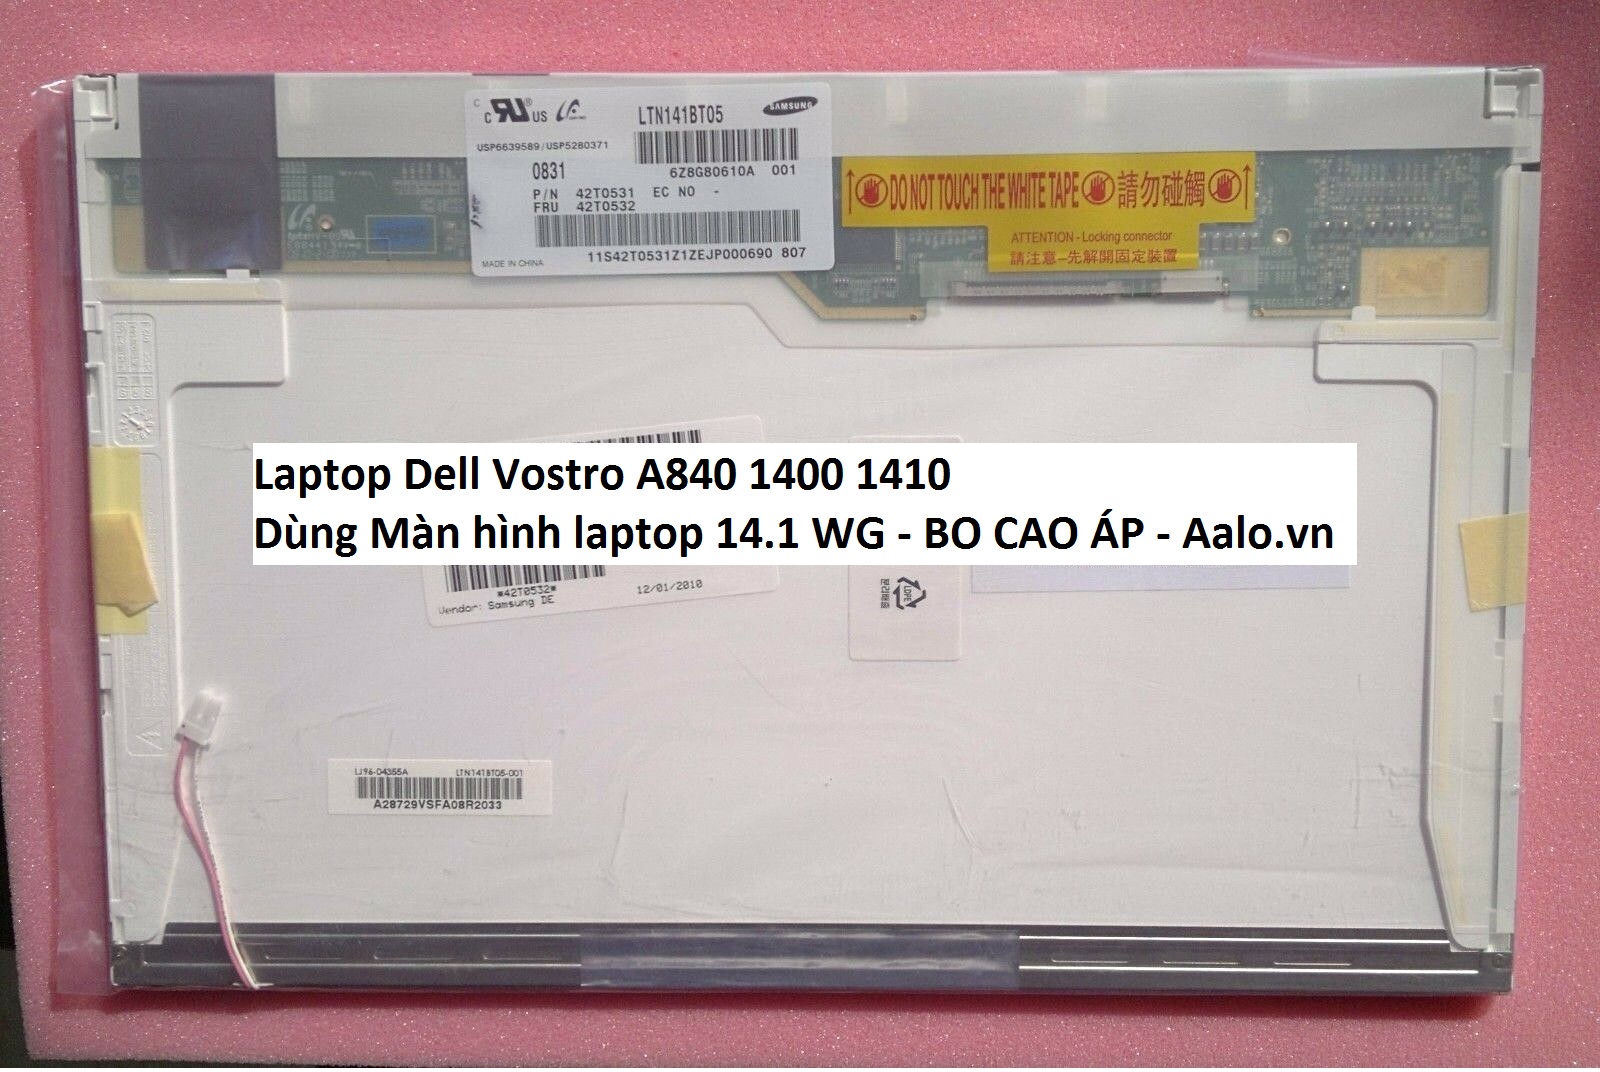 Màn hình Laptop Dell Vostro A840 1400 1410 - Aalo.vn